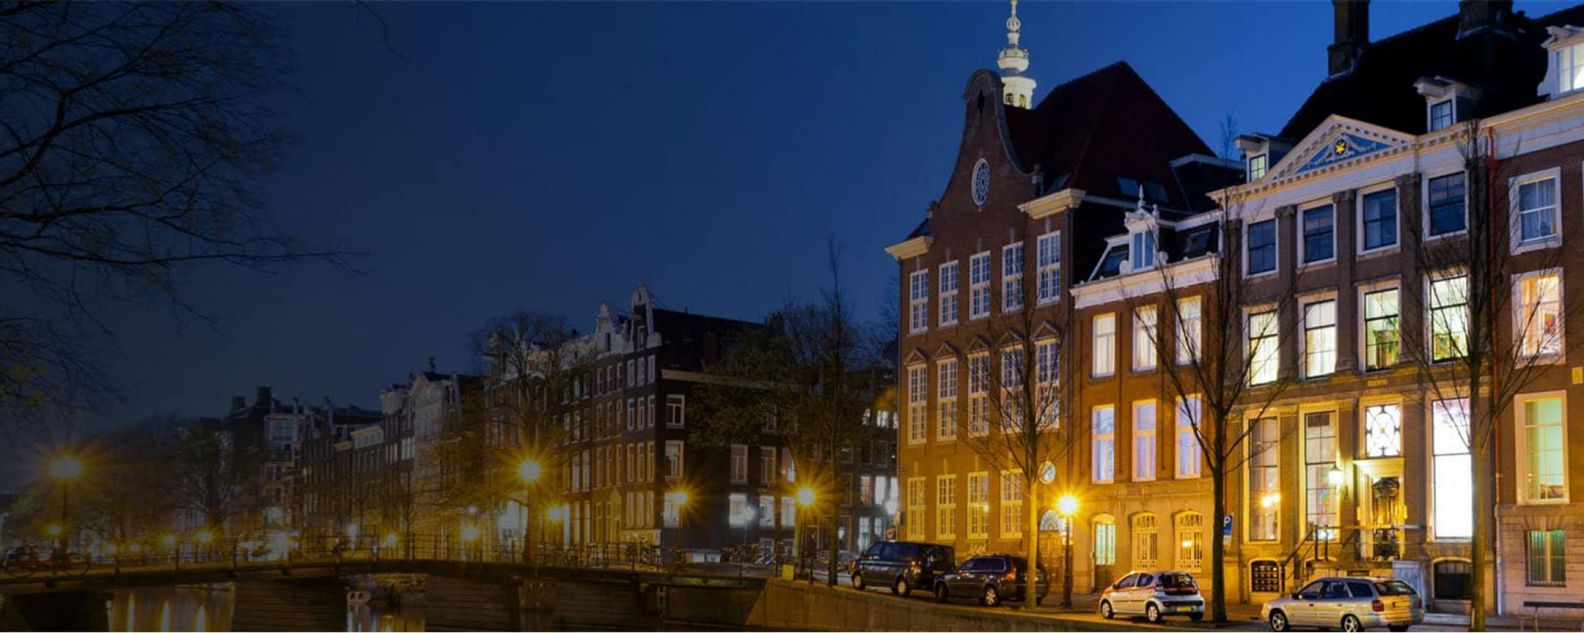 foto bangunan tradisional beserta mobil yang terparkir di sisi jalan di Amsterdam, Belanda